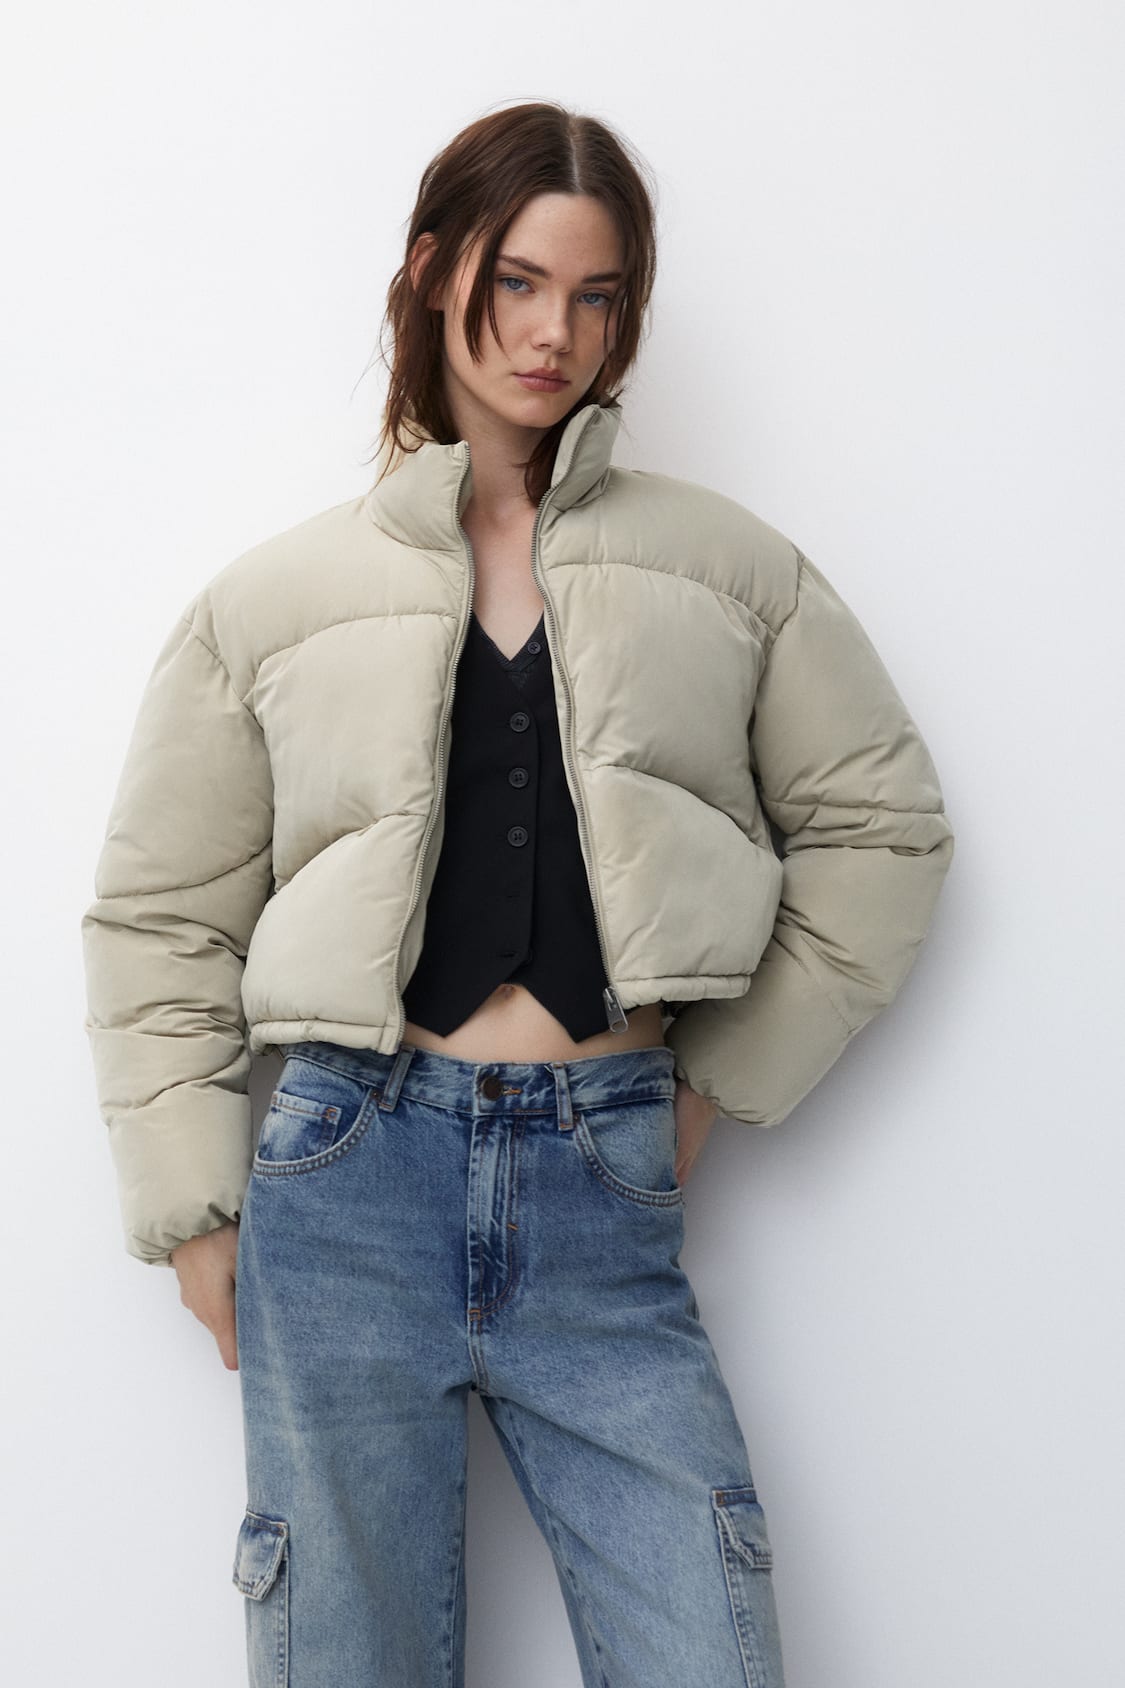 Puffer jackets - Jackets & coats - Clothing - Woman - PULL&BEAR TAIWAN,  CHINA / 中国台湾